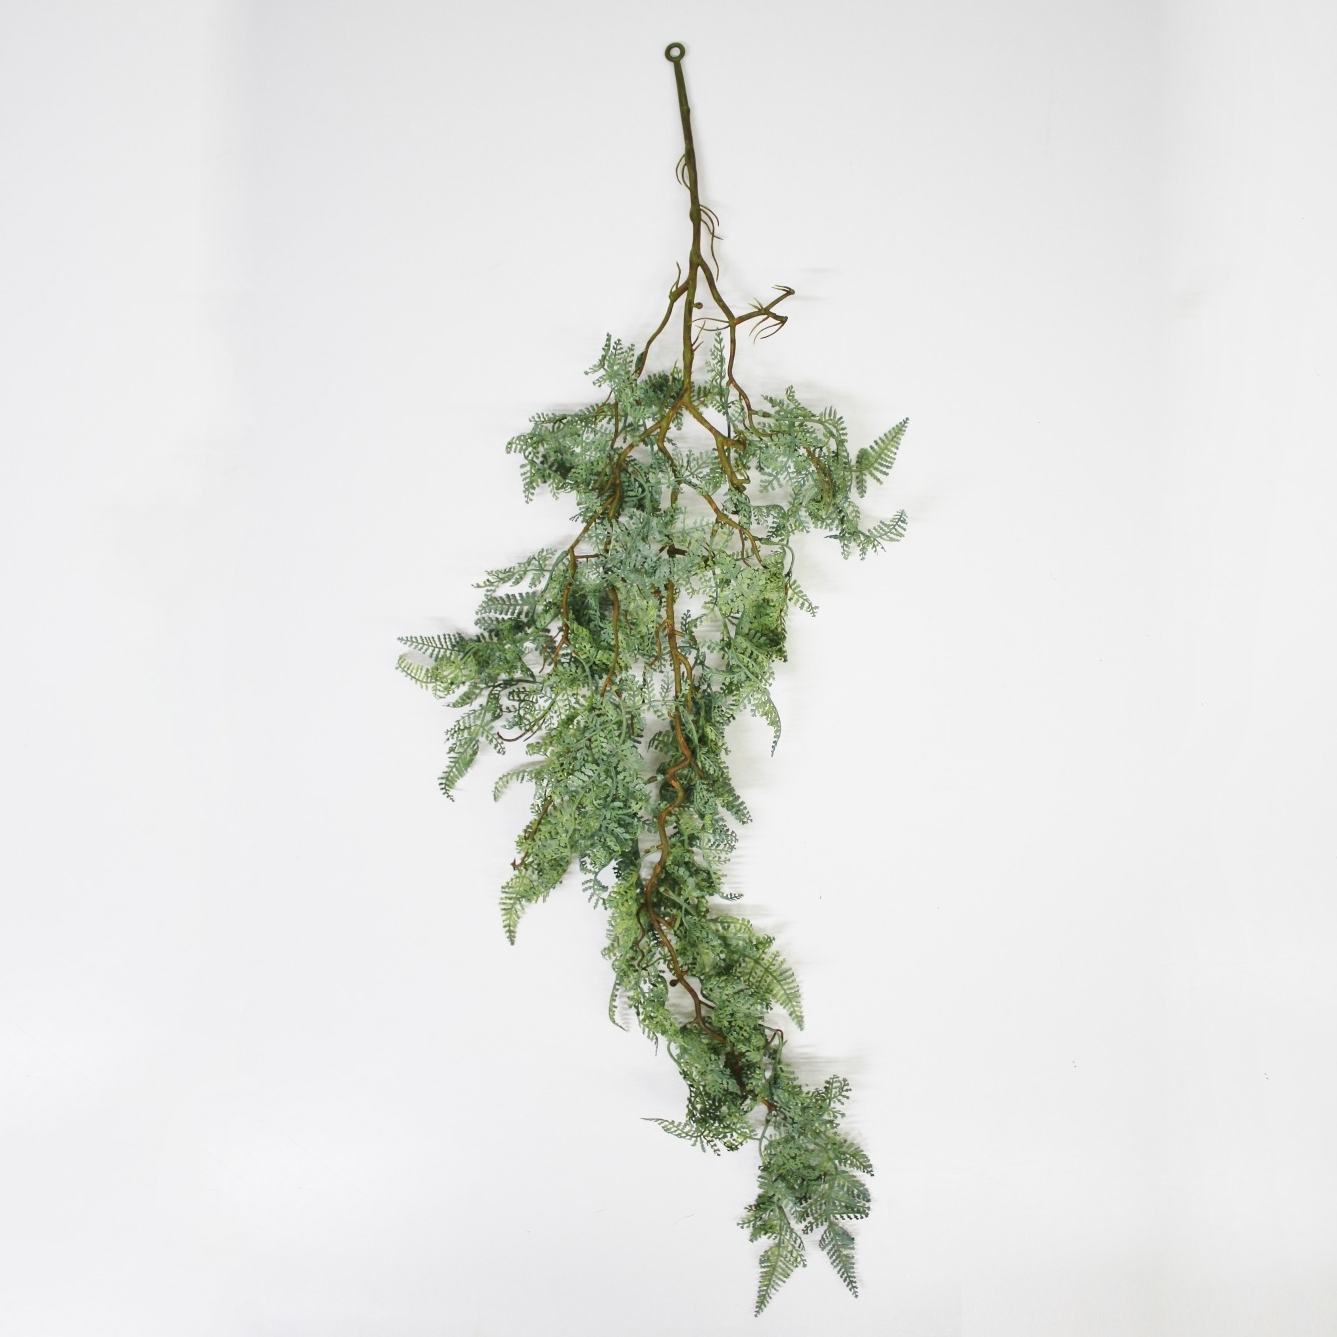 сциндапcус конэко о ампельный искусственный с листьями из латекса 90 см Папоротник Конэко-О ампельный 5551093, 90 см